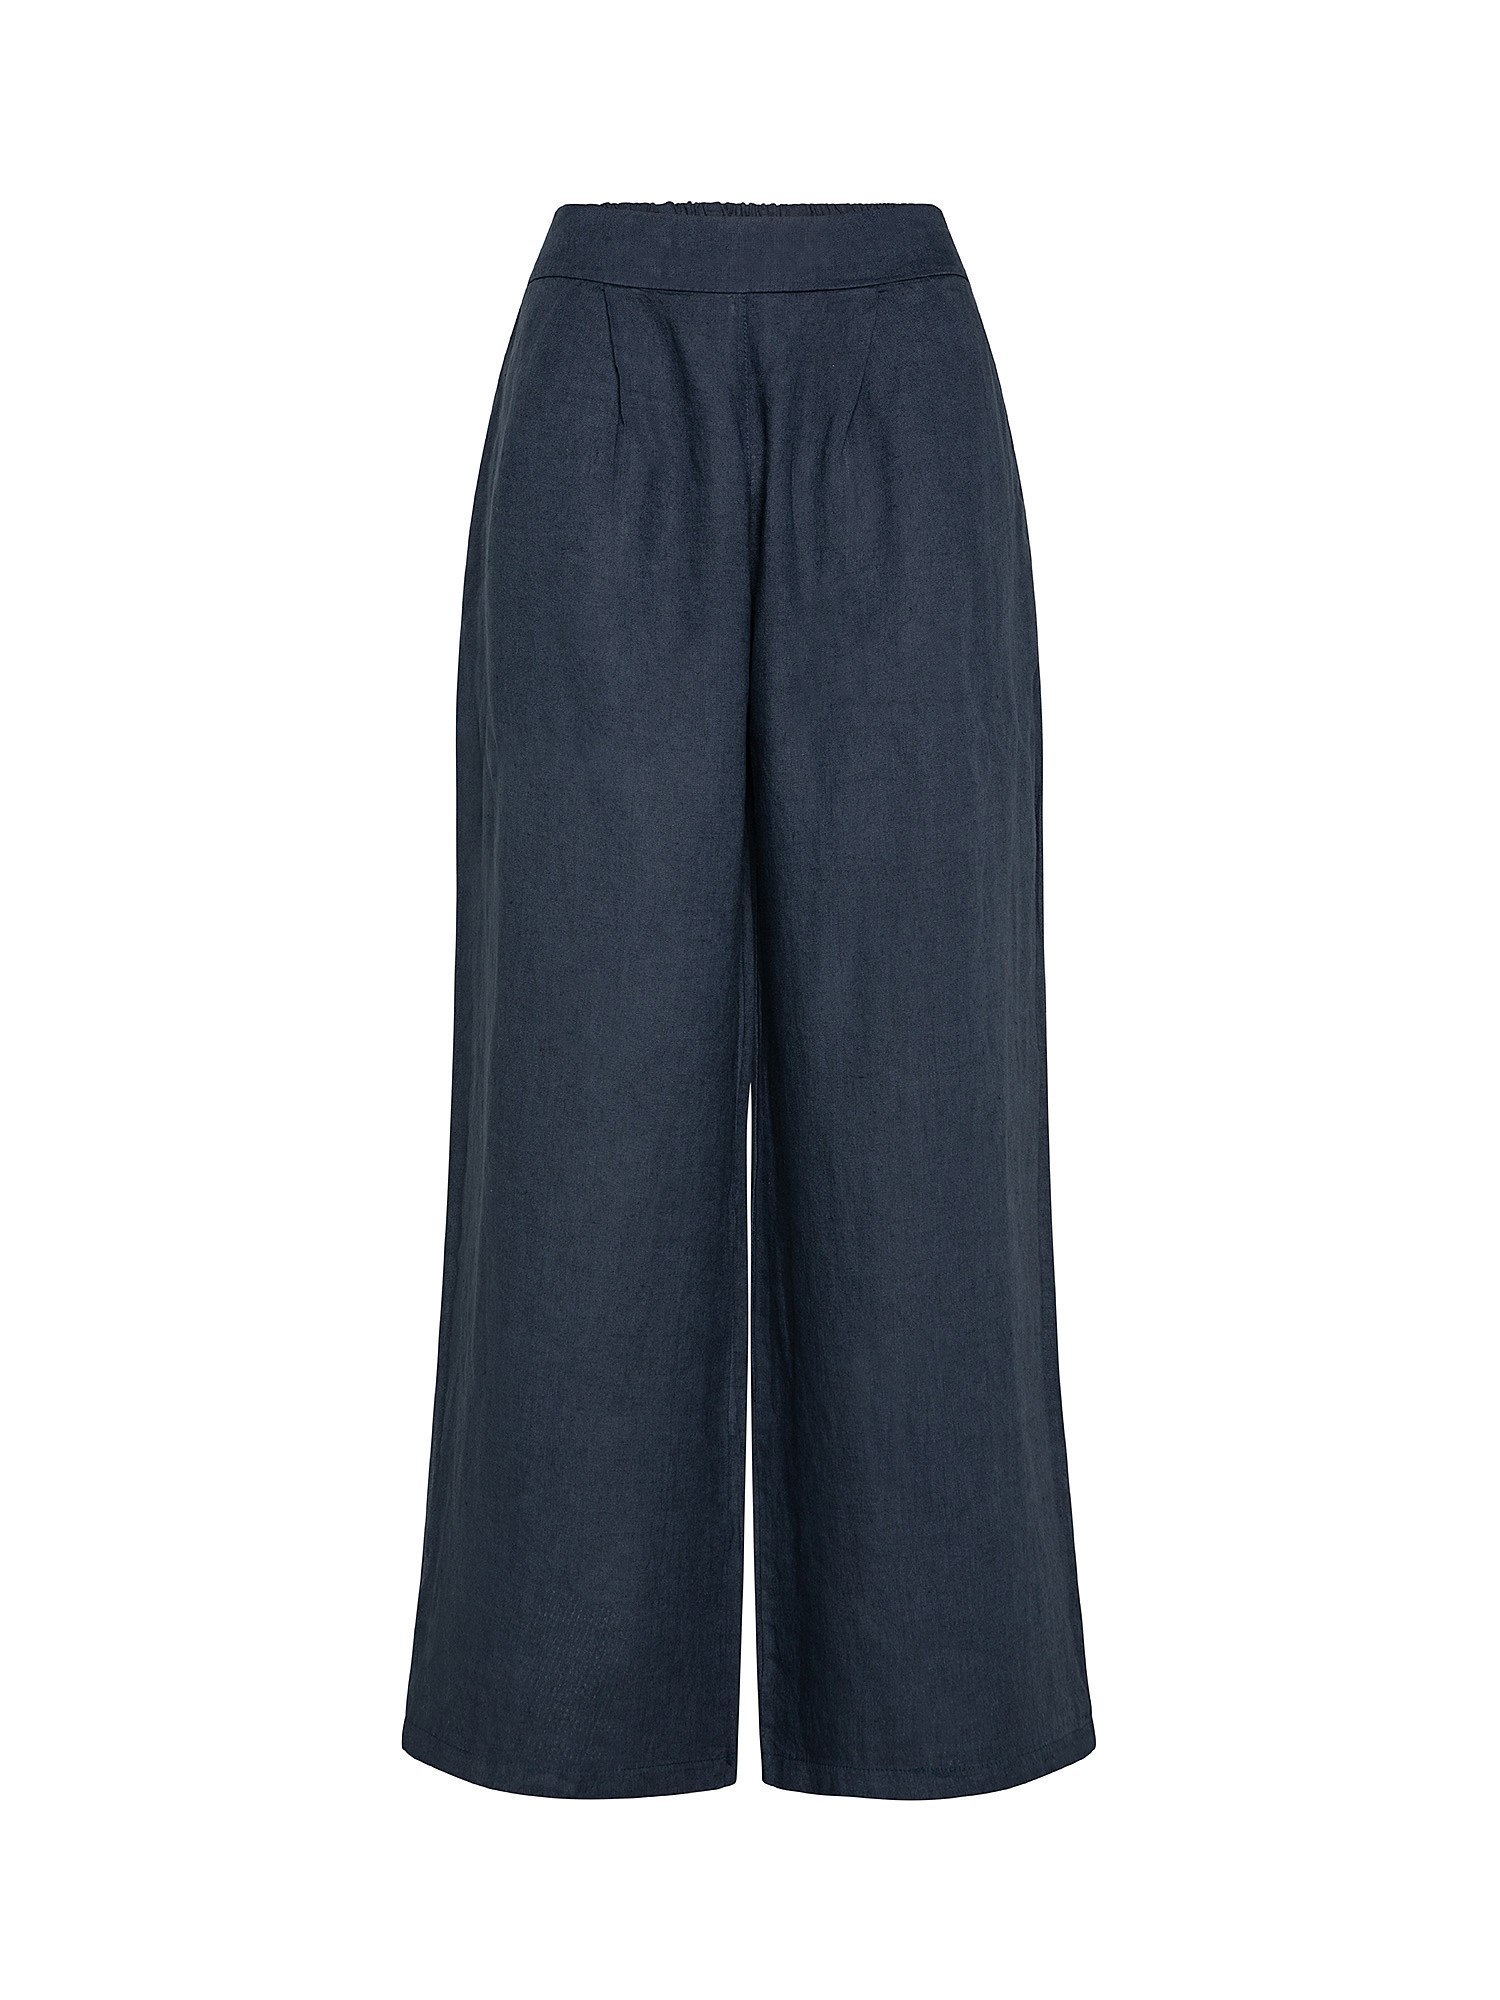 Pantalone ampio puro lino, Blu, large image number 0